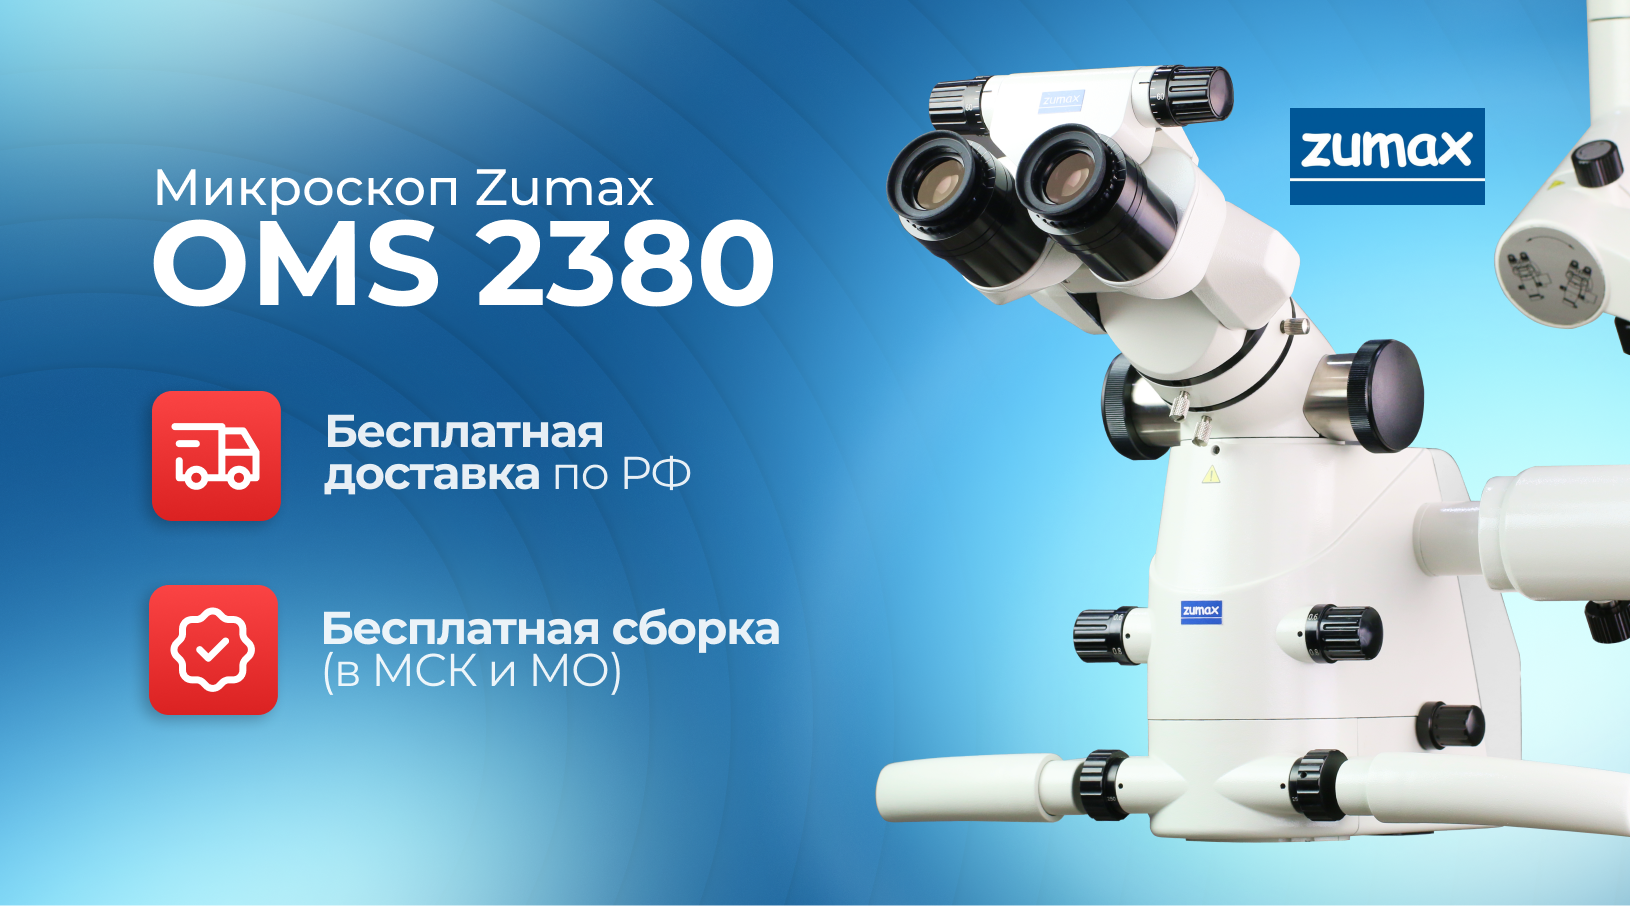 Акция на микроскопы Zumax 2380